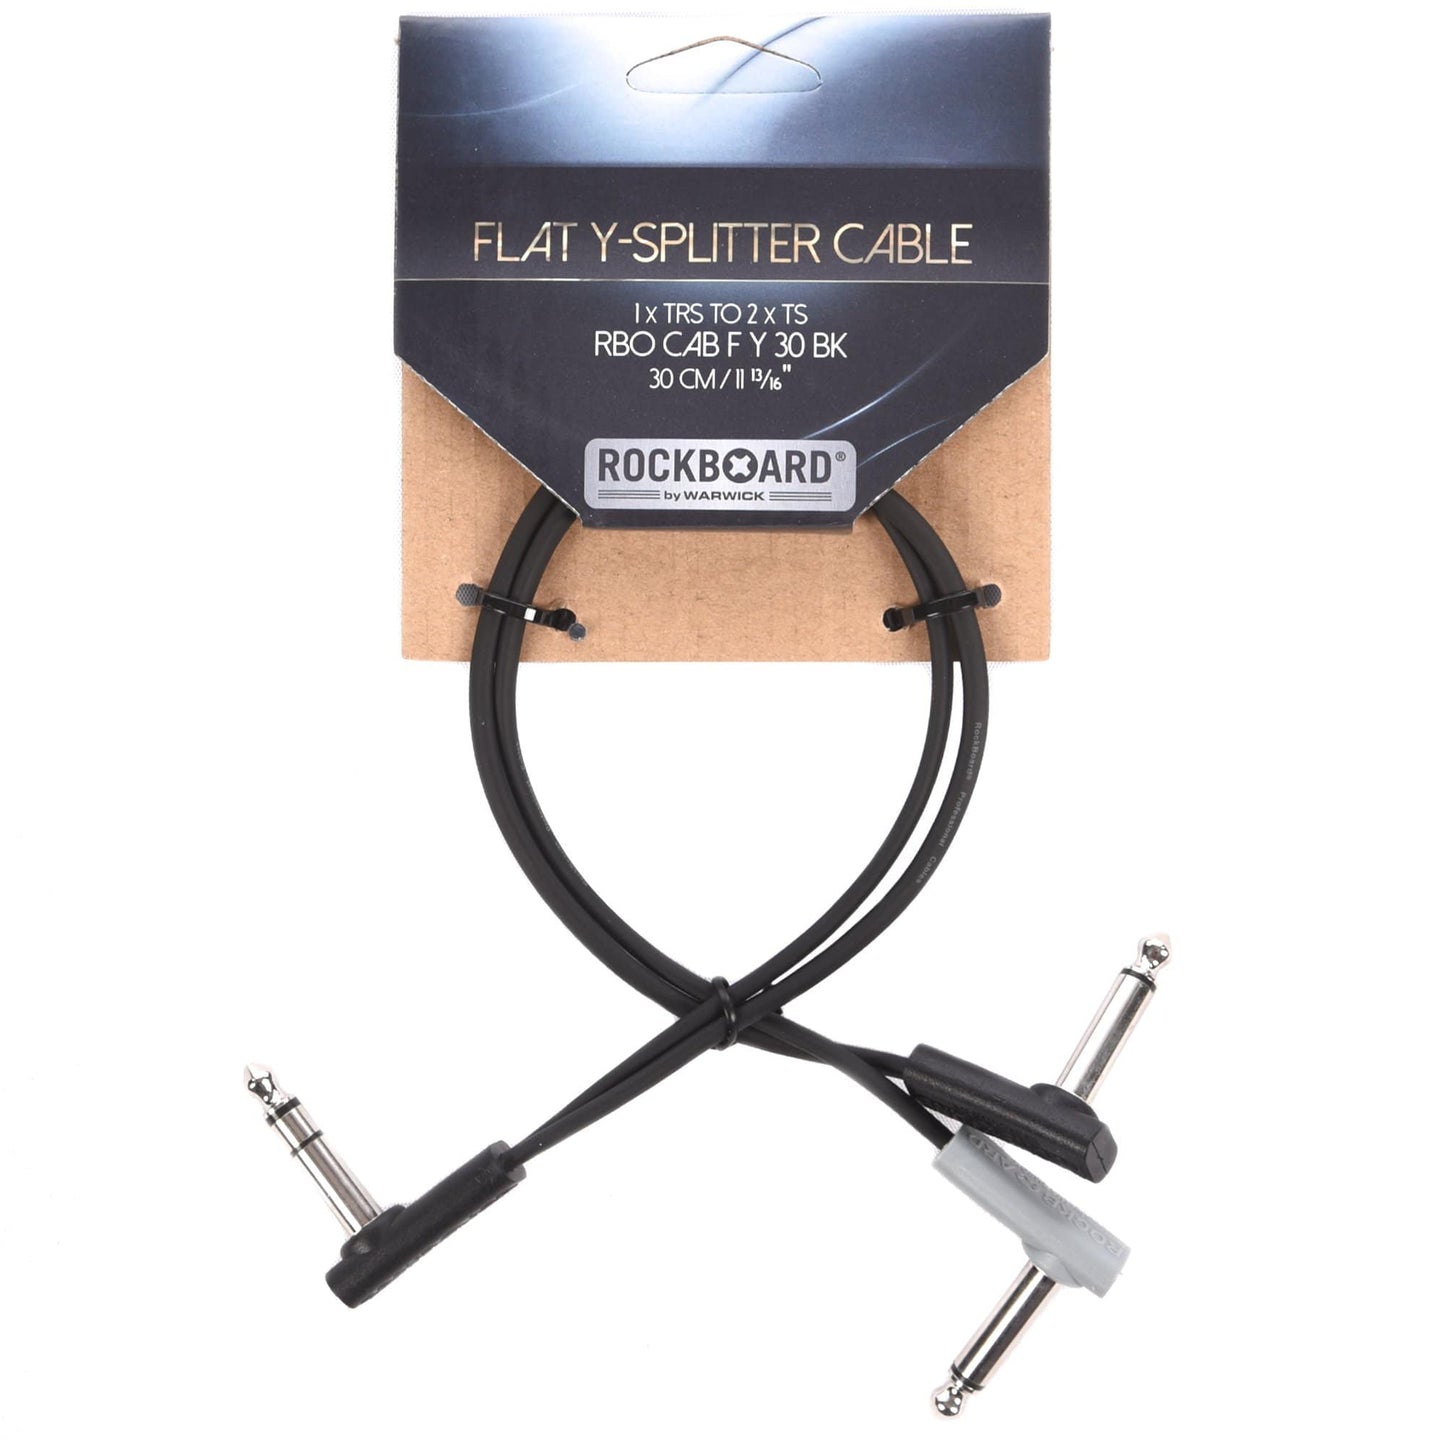 Rockgear Y Splitter Cable, 30 cm / 11.81", Black Accessories / Cables